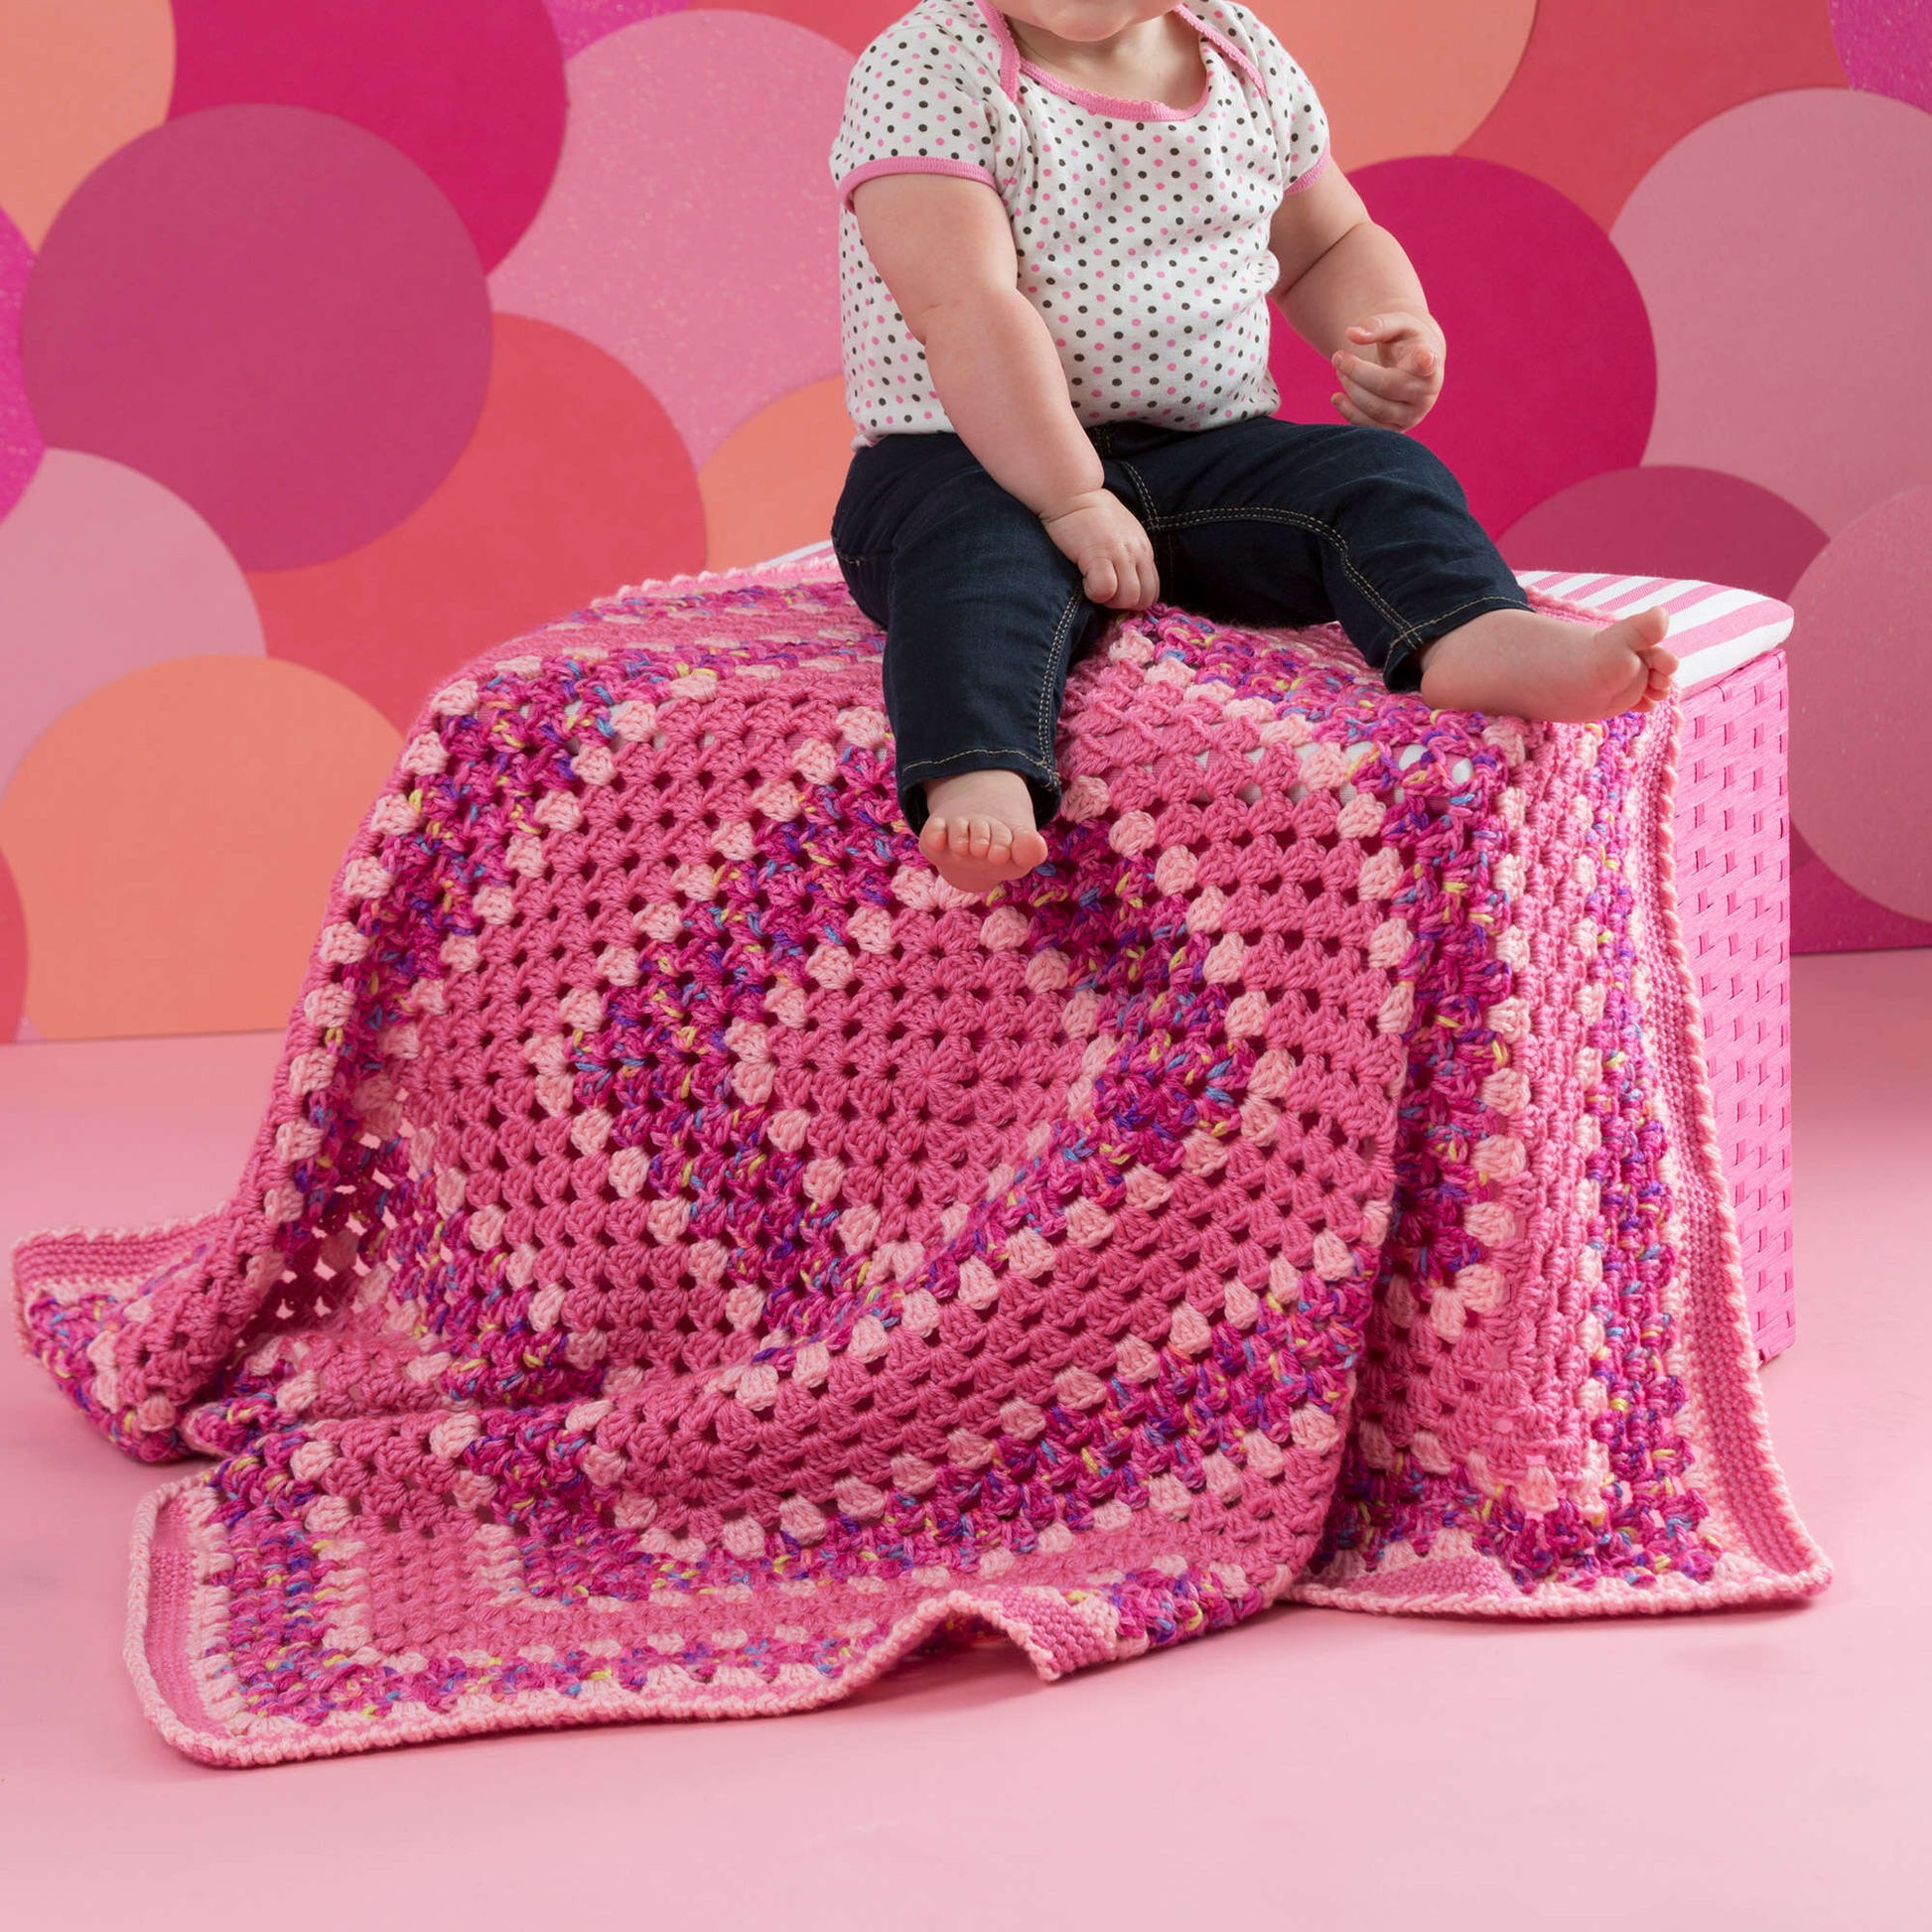 Free Red Heart Make It Pink Crochet Blanket Pattern